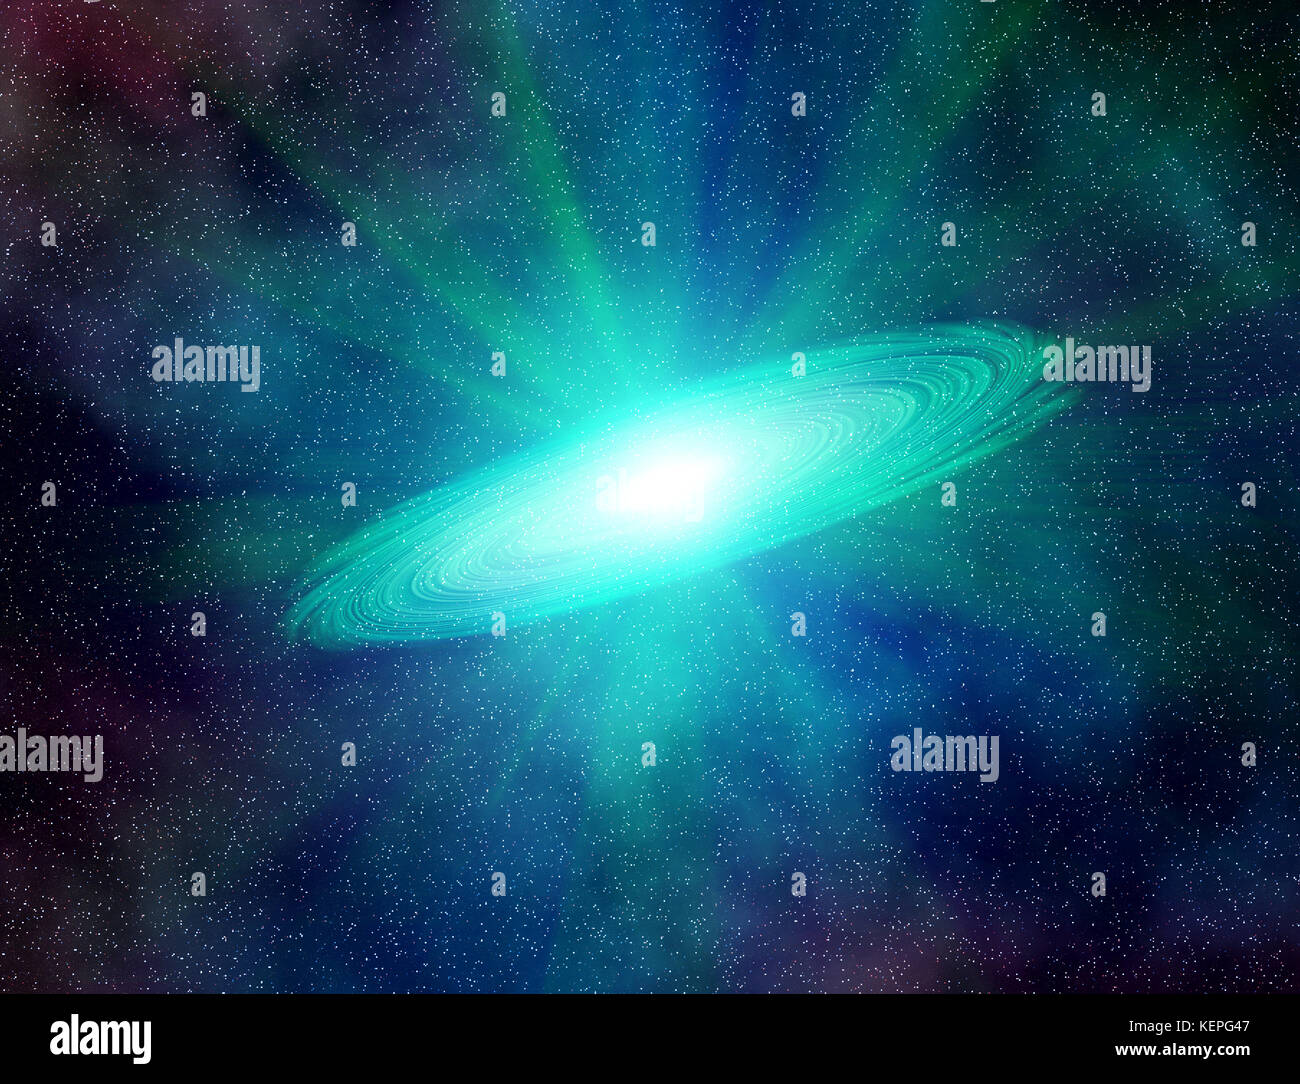 Résumé de l'univers de l'espace Astronomie illustration historique : explosion de supernova dans la galaxie active centre. Banque D'Images